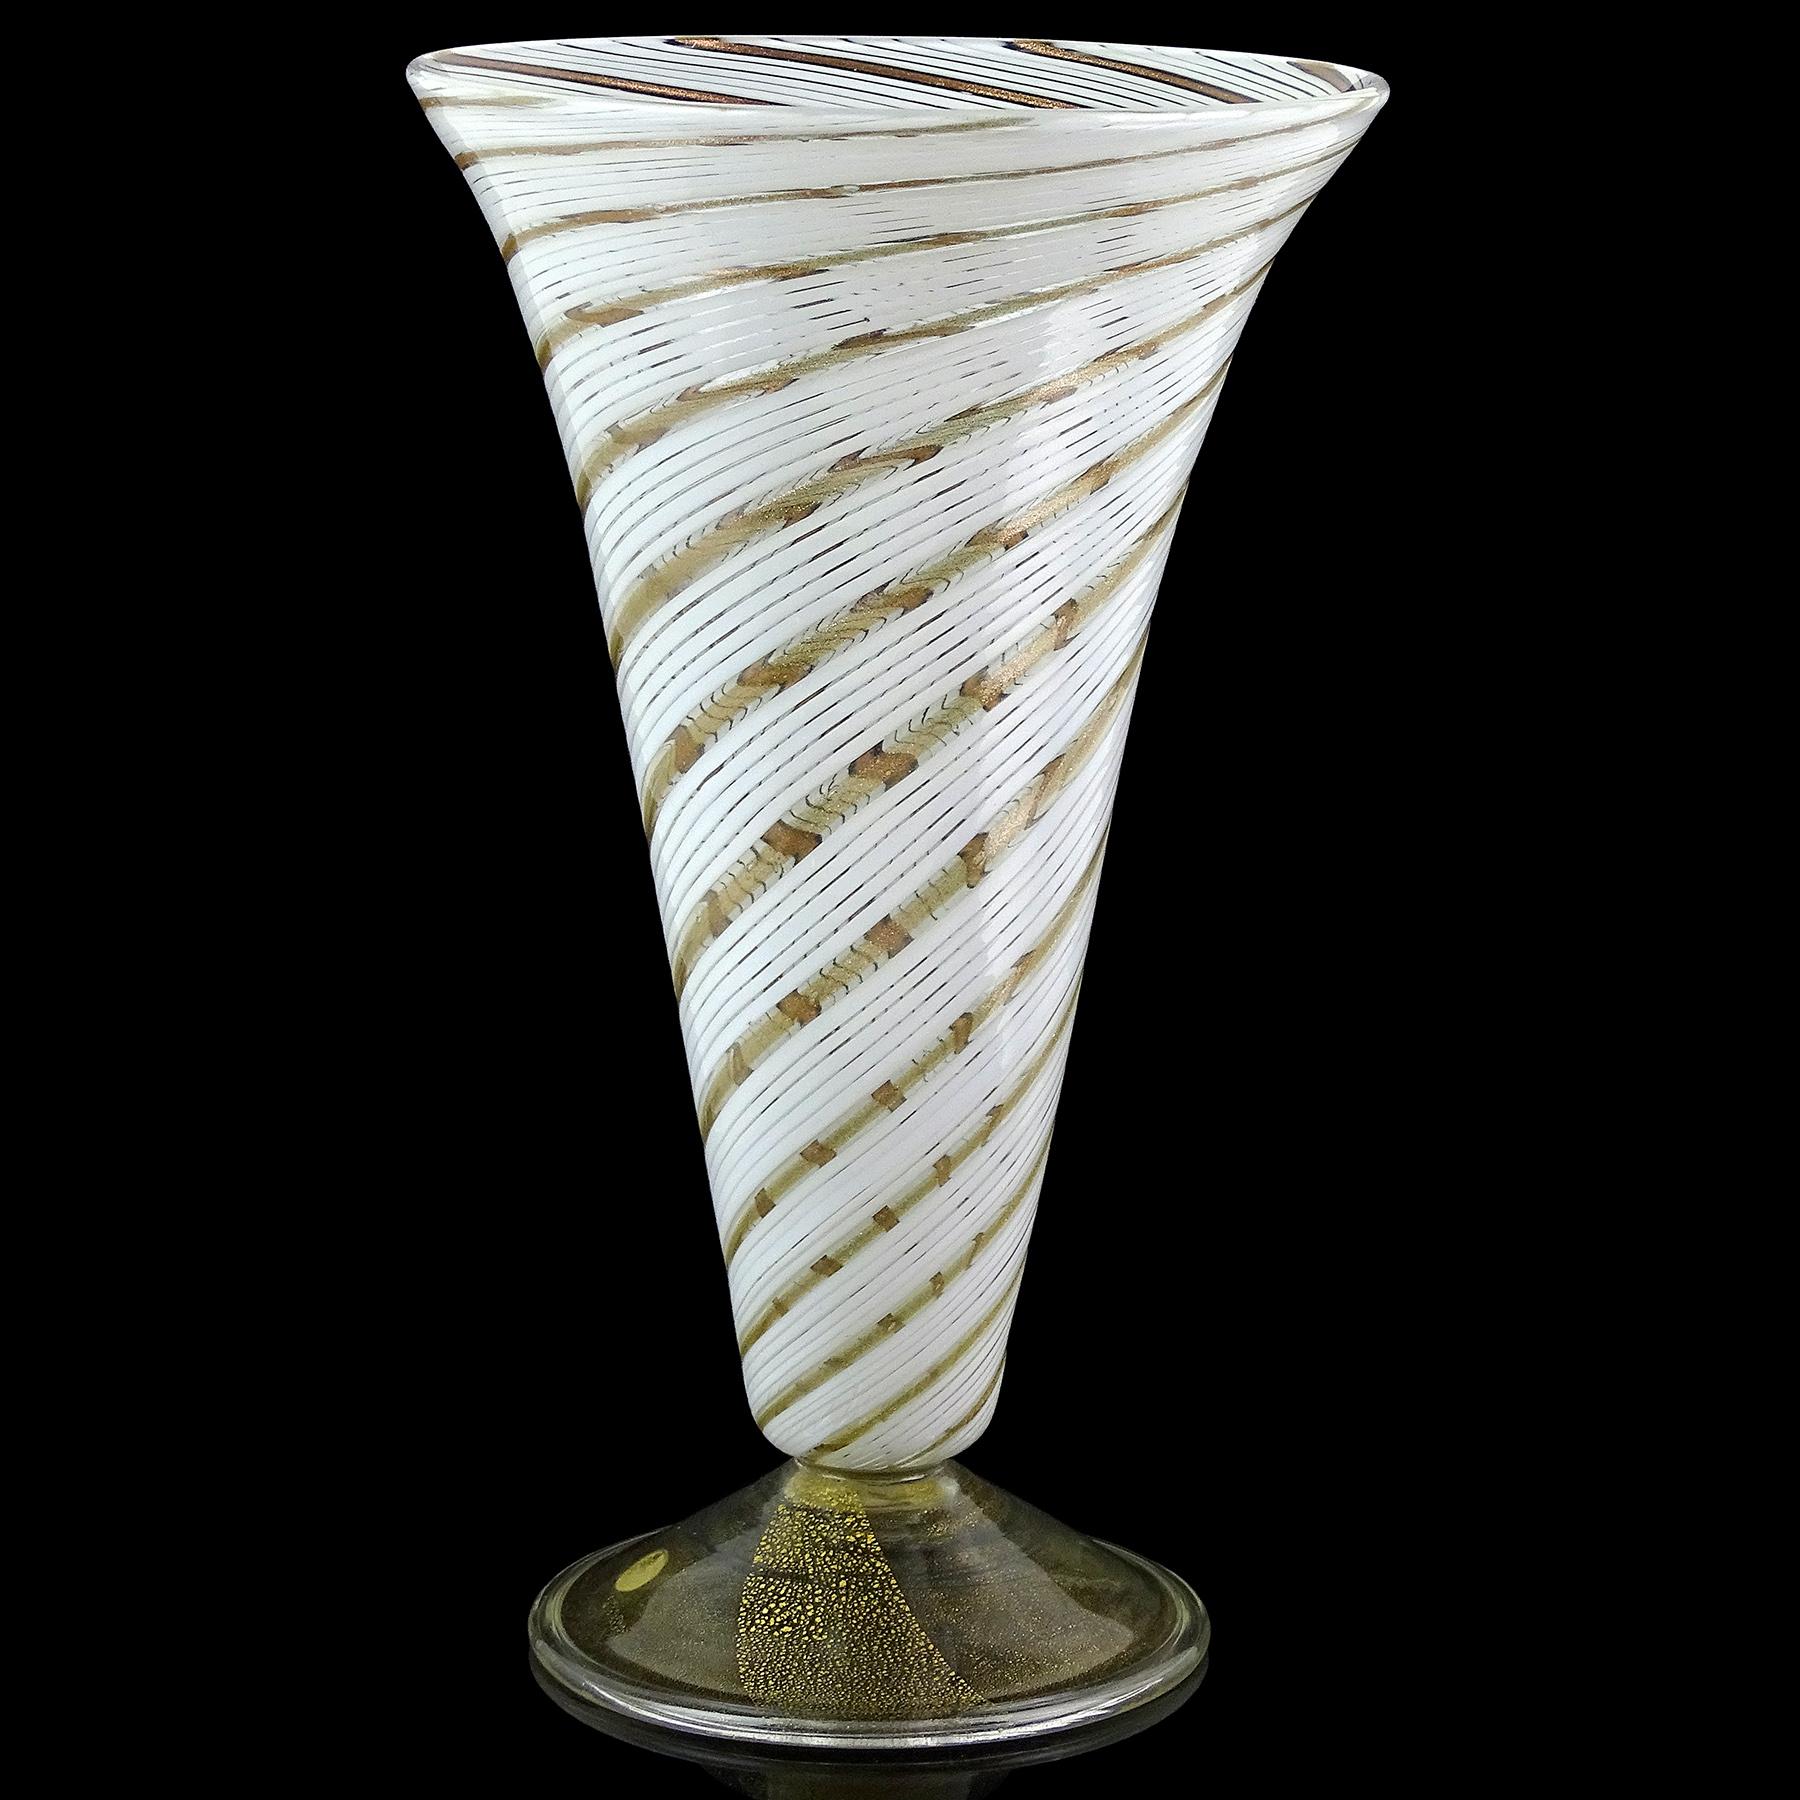 Magnifique vase à pied en verre d'art italien soufflé à la main à Murano, blanc tourbillonnant et mouchetures d'aventurine. Atrtibuted to Arte Vetraria Muranese (A.VE.M.) company, and in the style of designer Dino Martens. Le vase est créé selon la